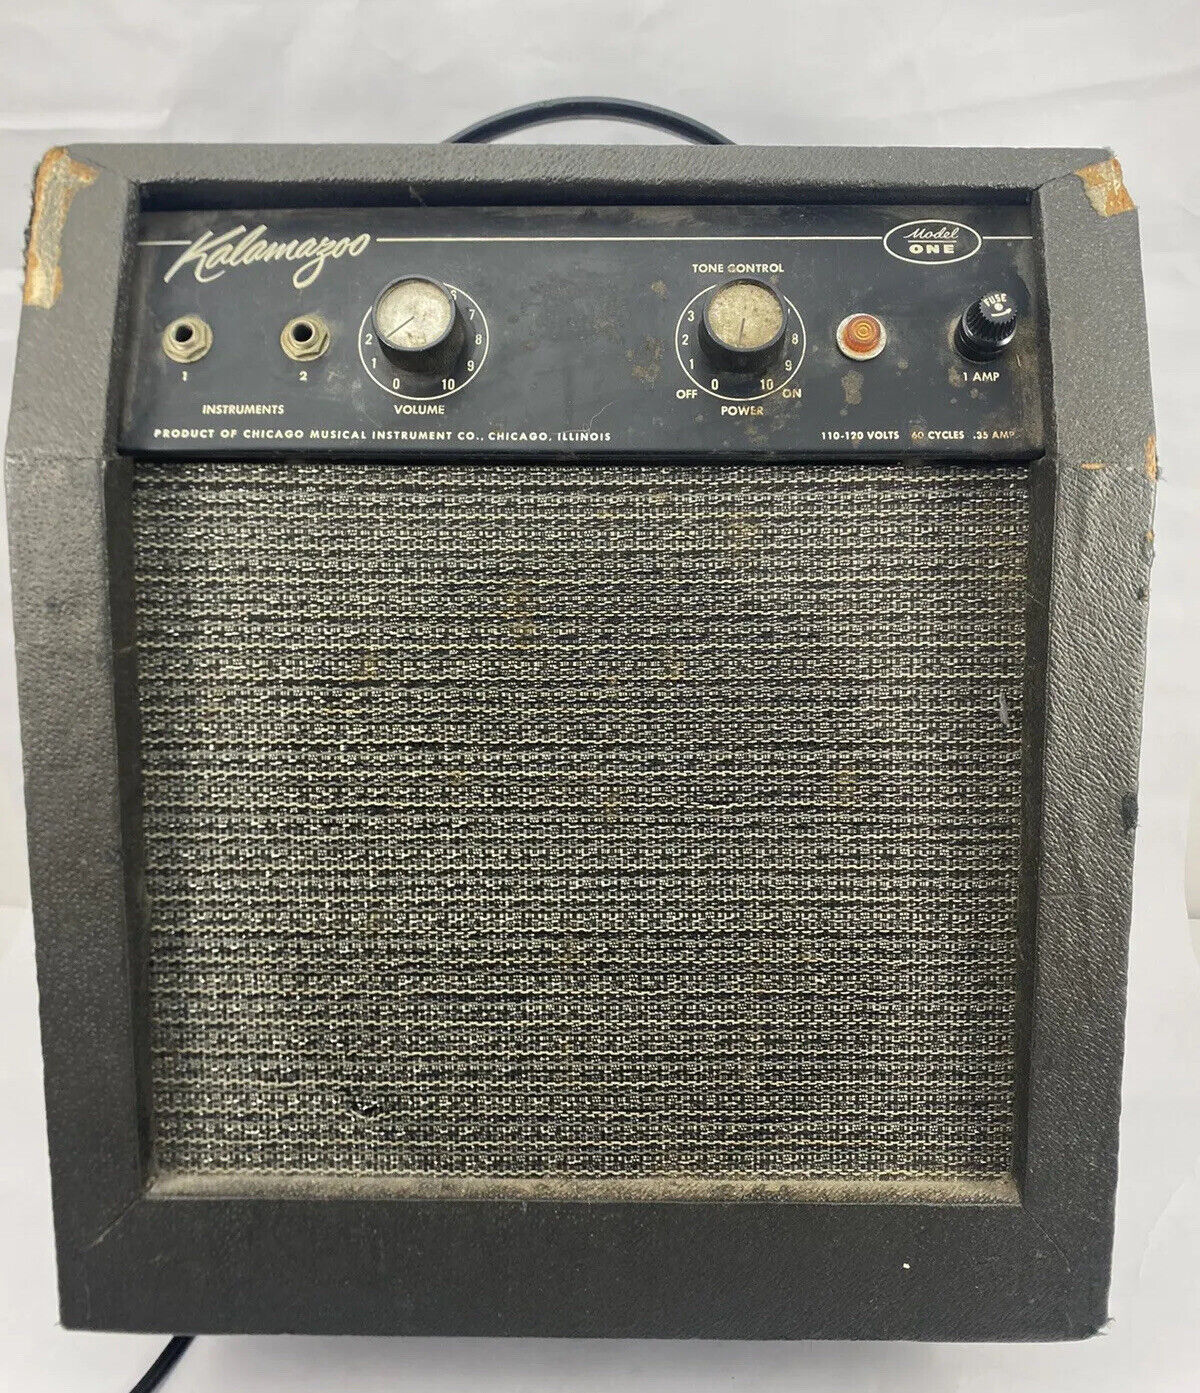 1965 Kalamazoo Model 1 Vintage Tube Amp Tested Original Tubes Speaker Knobs